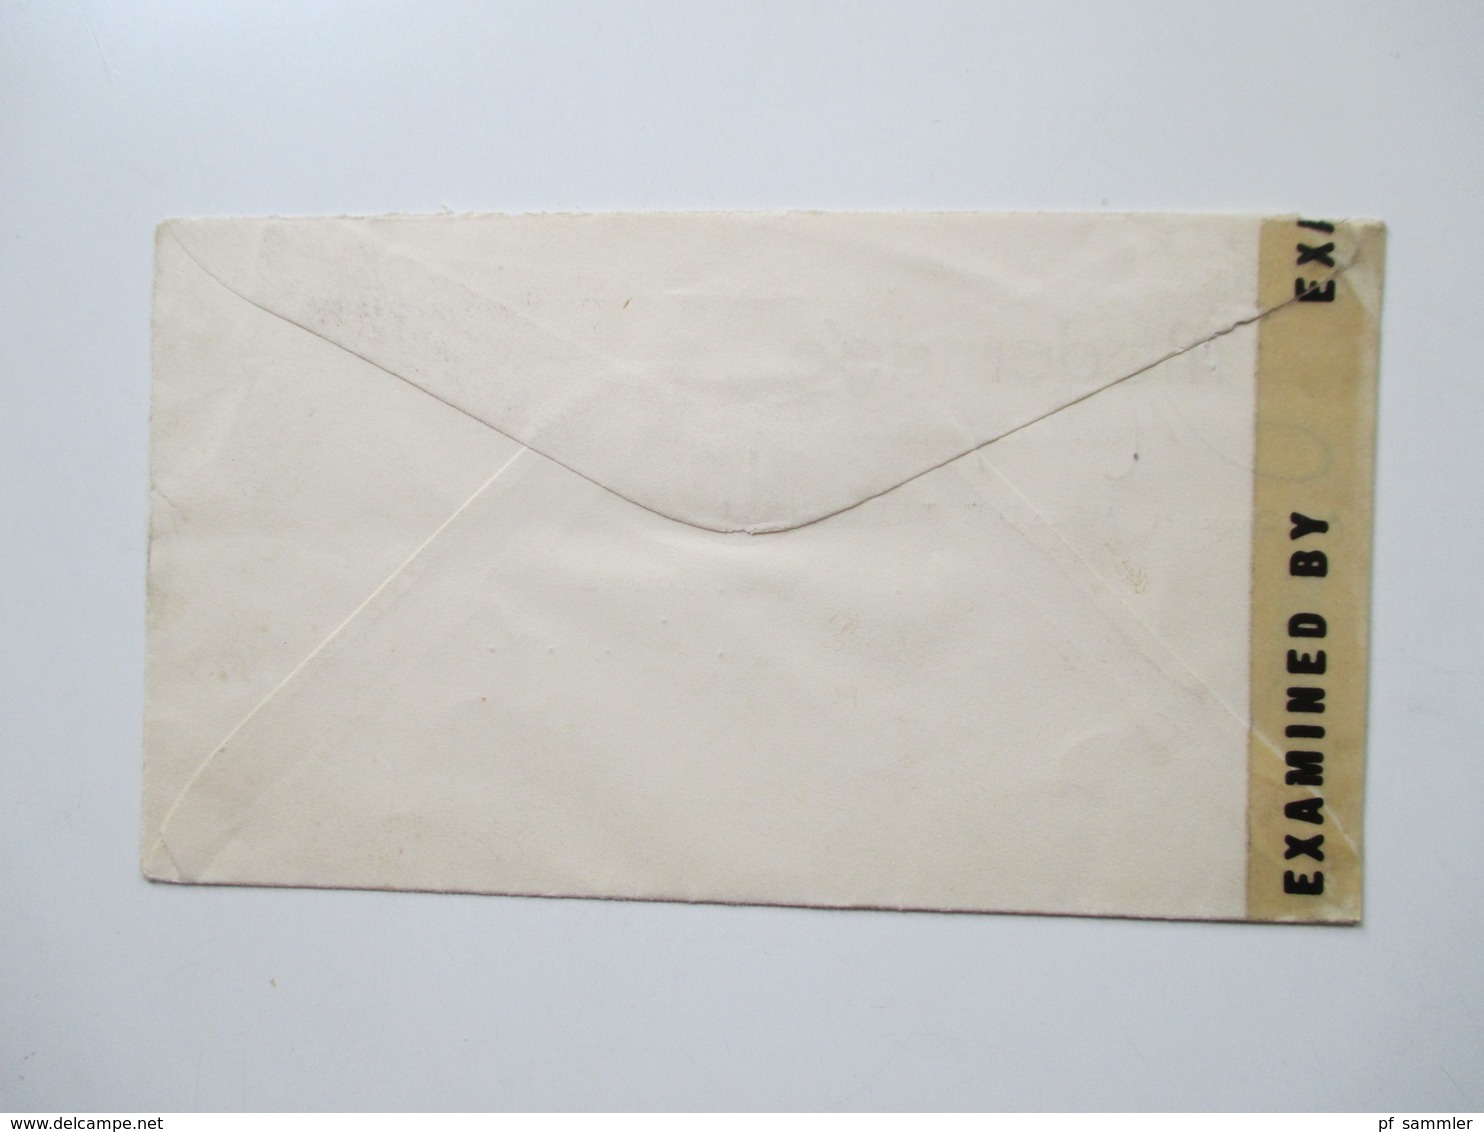 Belegeposten ca. 1942 - 44 Zensurpost mit 38 Briefen Südamerika - USA verschiedene Länder! Examined by... / Censorship